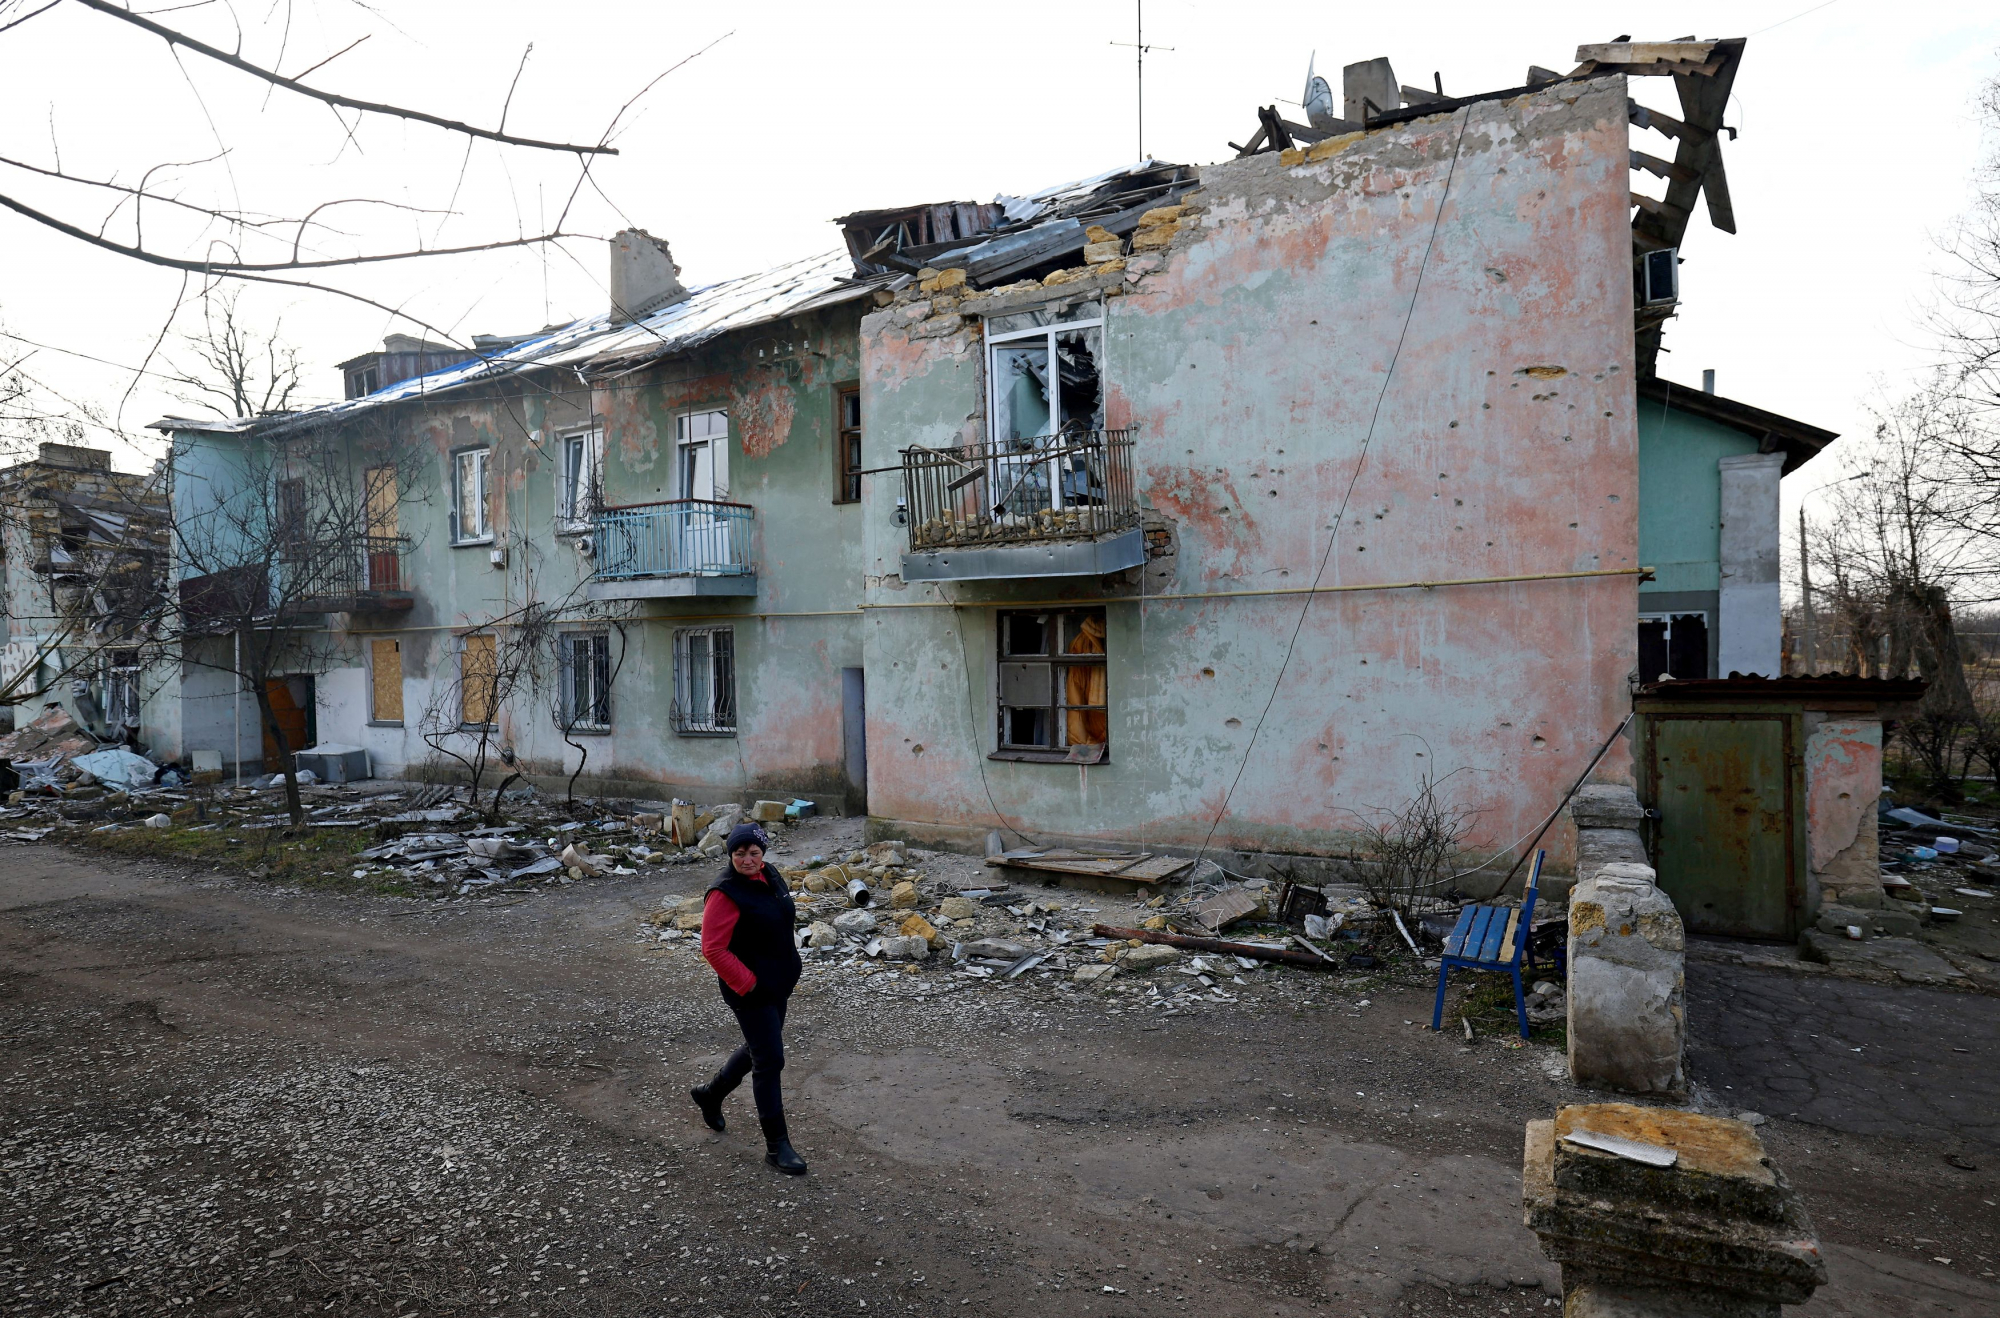 Ουκρανία: Το 79% των προσφύγων αντιμετωπίζει δυσκολίες διαβίωσης στις χώρες υποδοχής